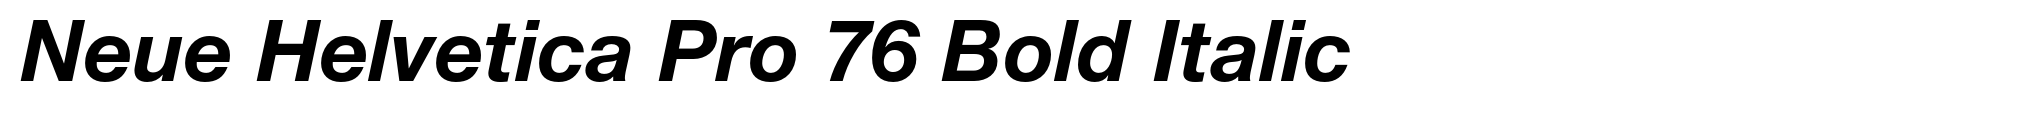 Neue Helvetica Pro 76 Bold Italic image